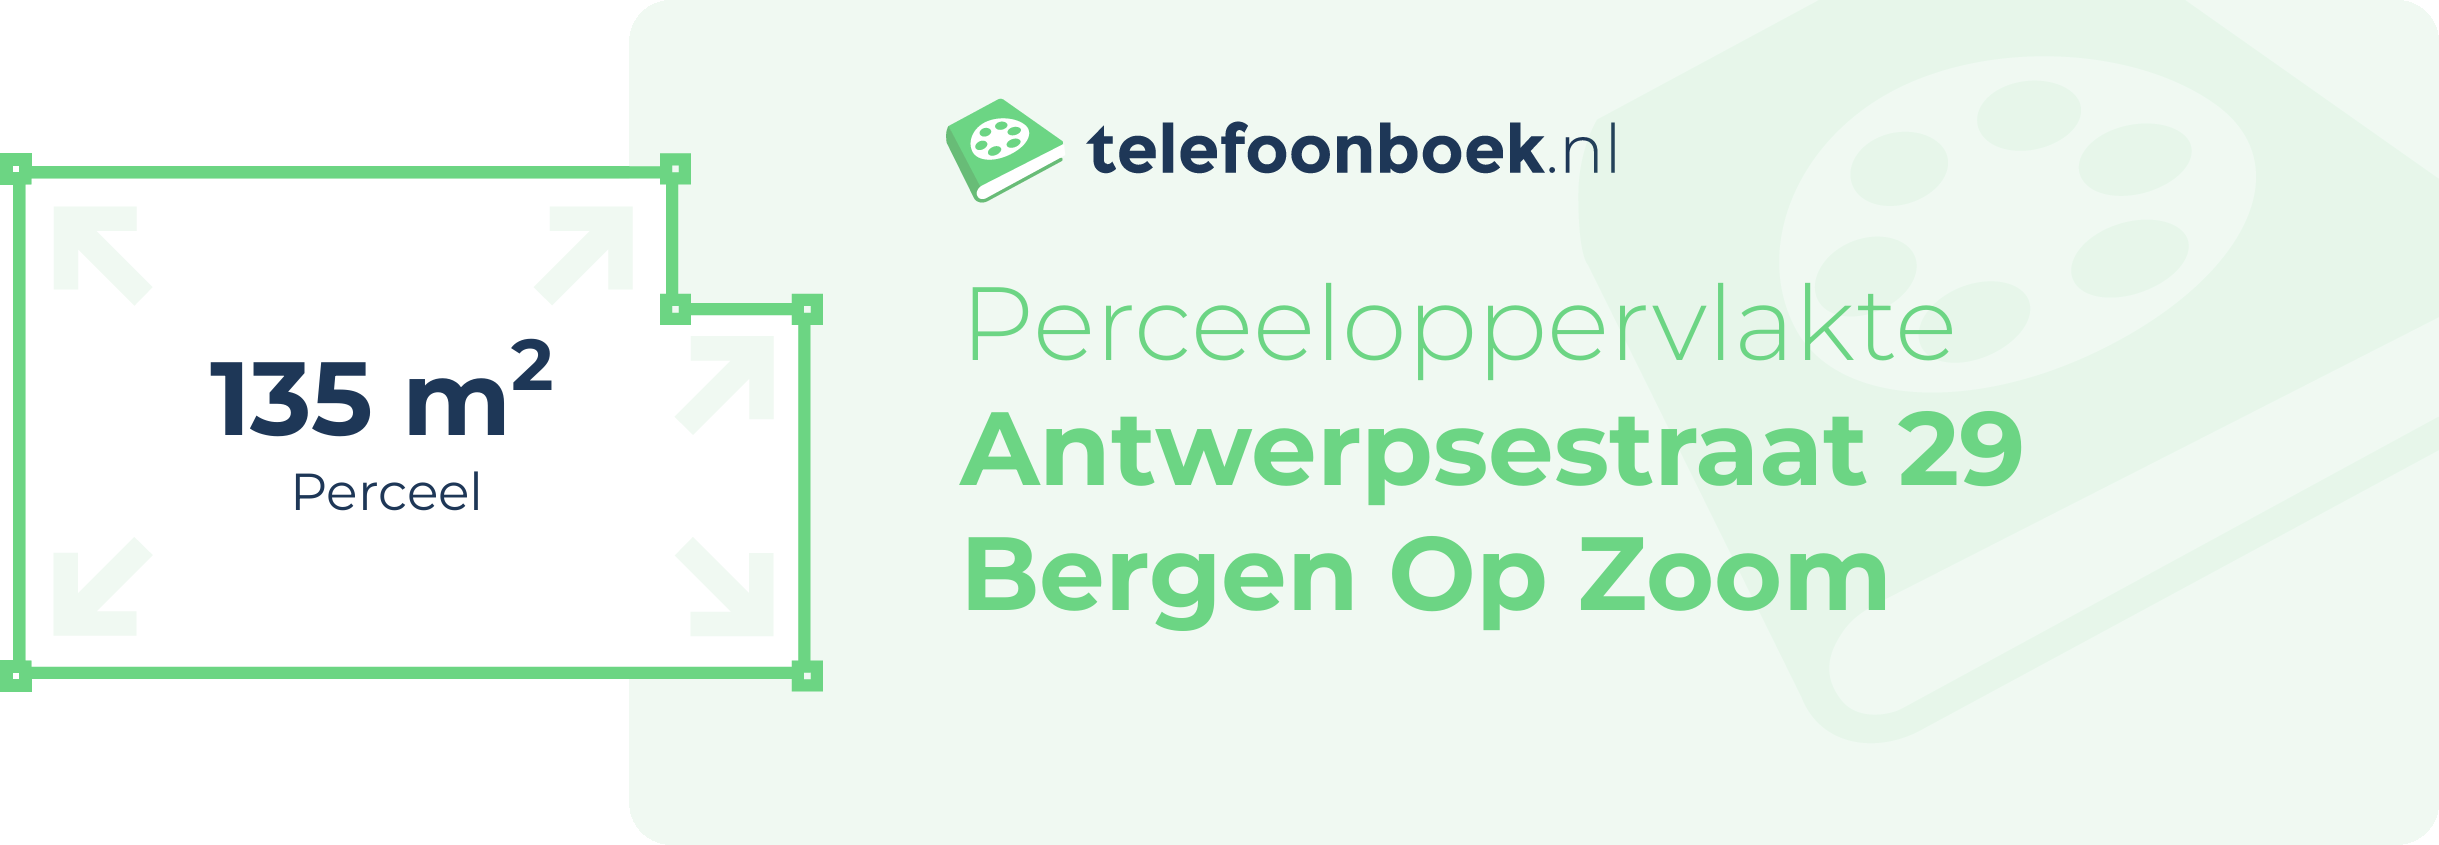 Perceeloppervlakte Antwerpsestraat 29 Bergen Op Zoom